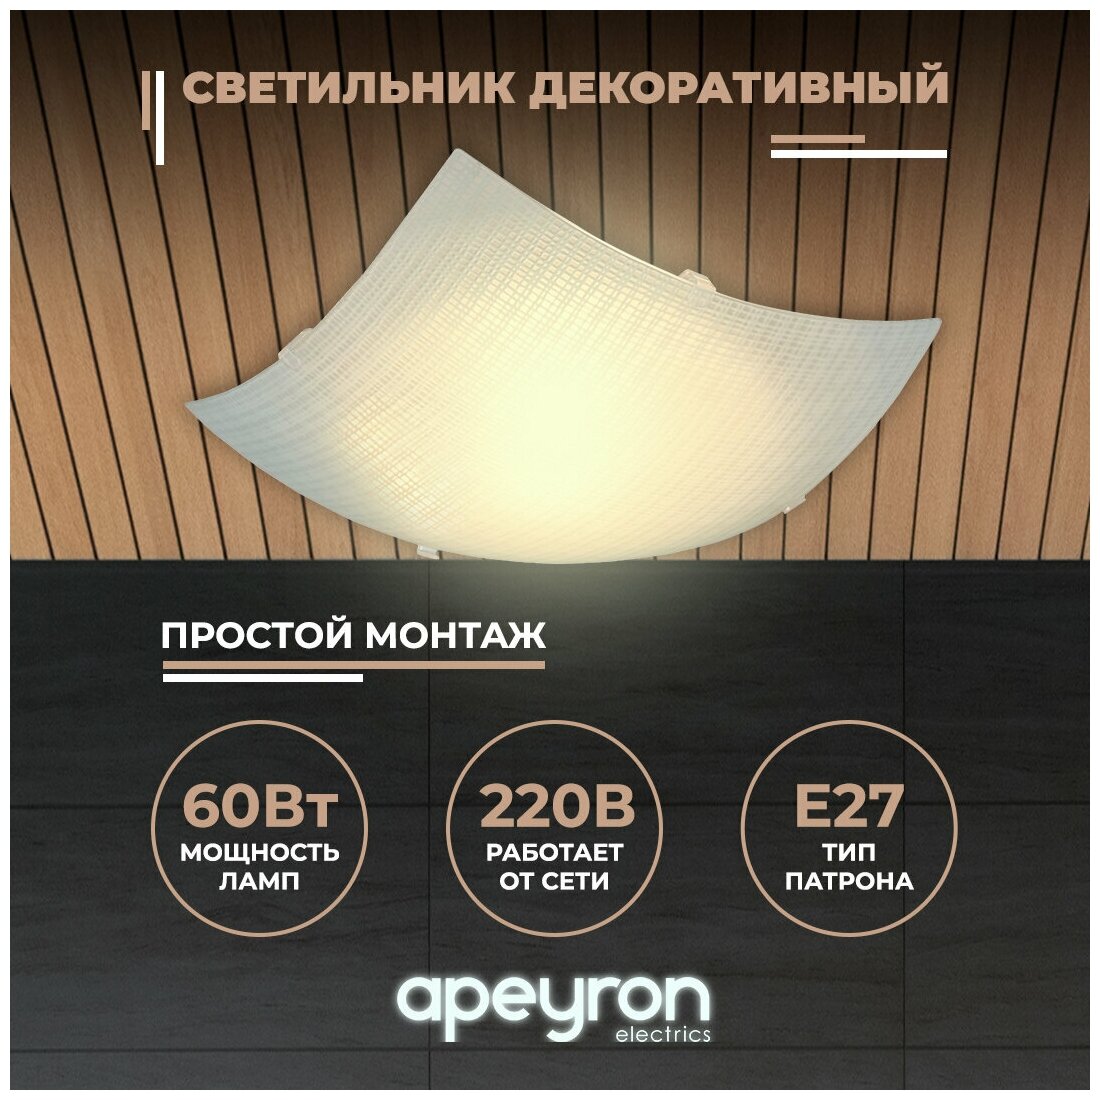 Декоративный настенно-потолочный светильник Apeyron 16-184 со стеклянным плафоном / Е27 / 60Вт / 220В / IP20 / 250х250х90мм